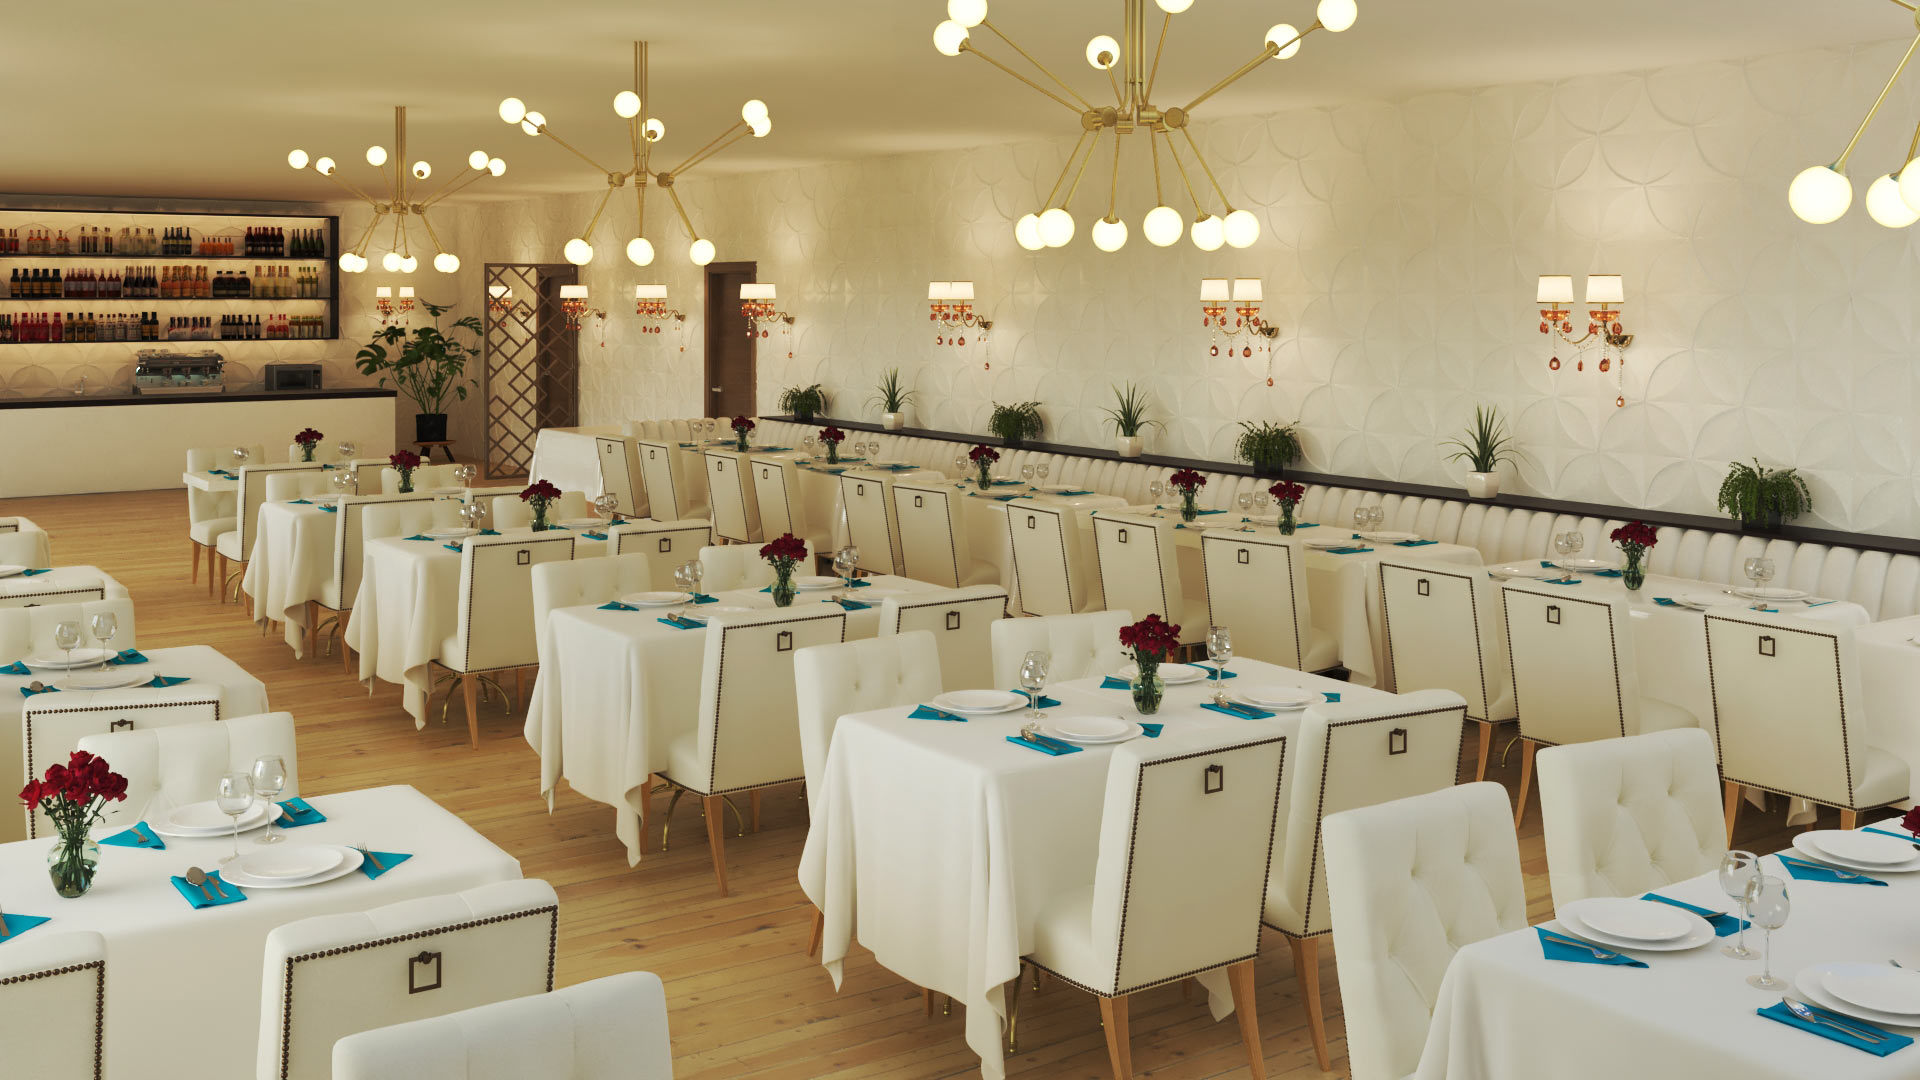 Salle de restaurant, modélisation 3d - Décoratrice Graphiste architecture 3d freelance 